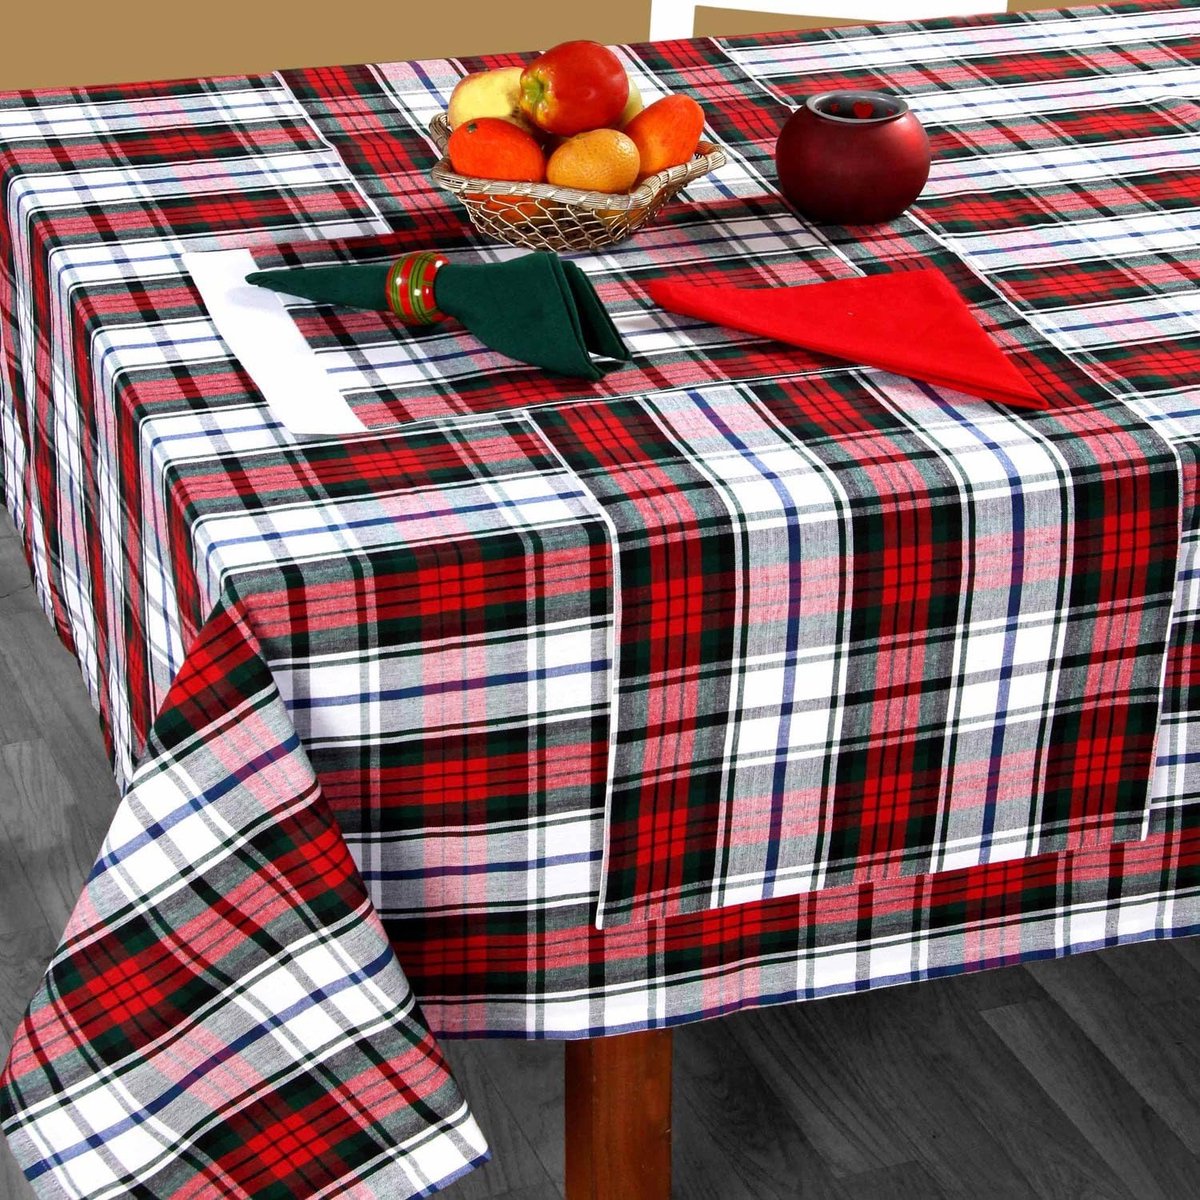 Geruit tafelkleed met tartan-patroon, groen-wit, 100% katoen, hoekig tafelkleed voor eettafel of keukentafel met Schotse patroon, 137 x 228 cm